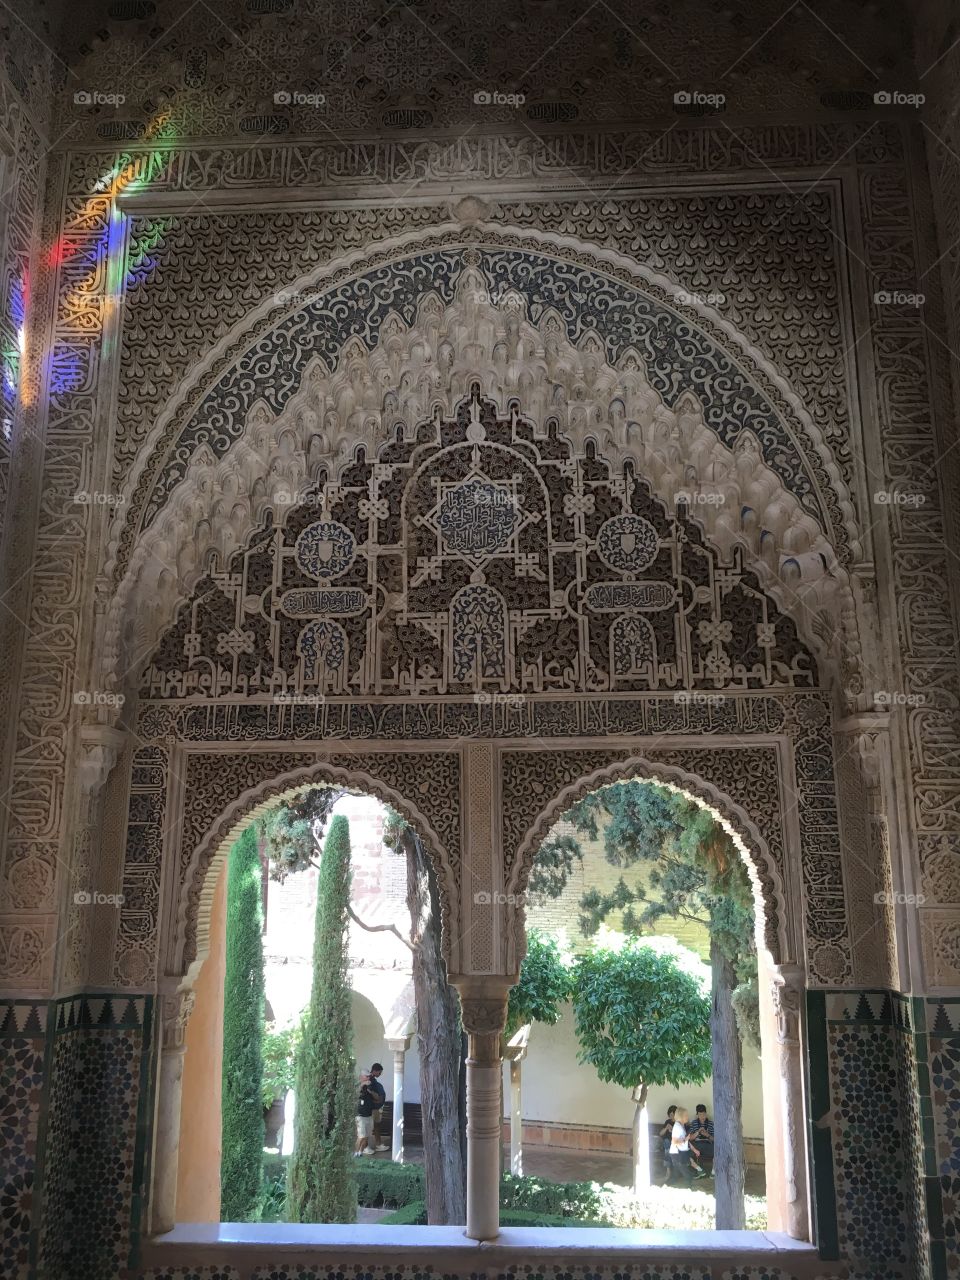 Window in Alhambra, Granada Spain 